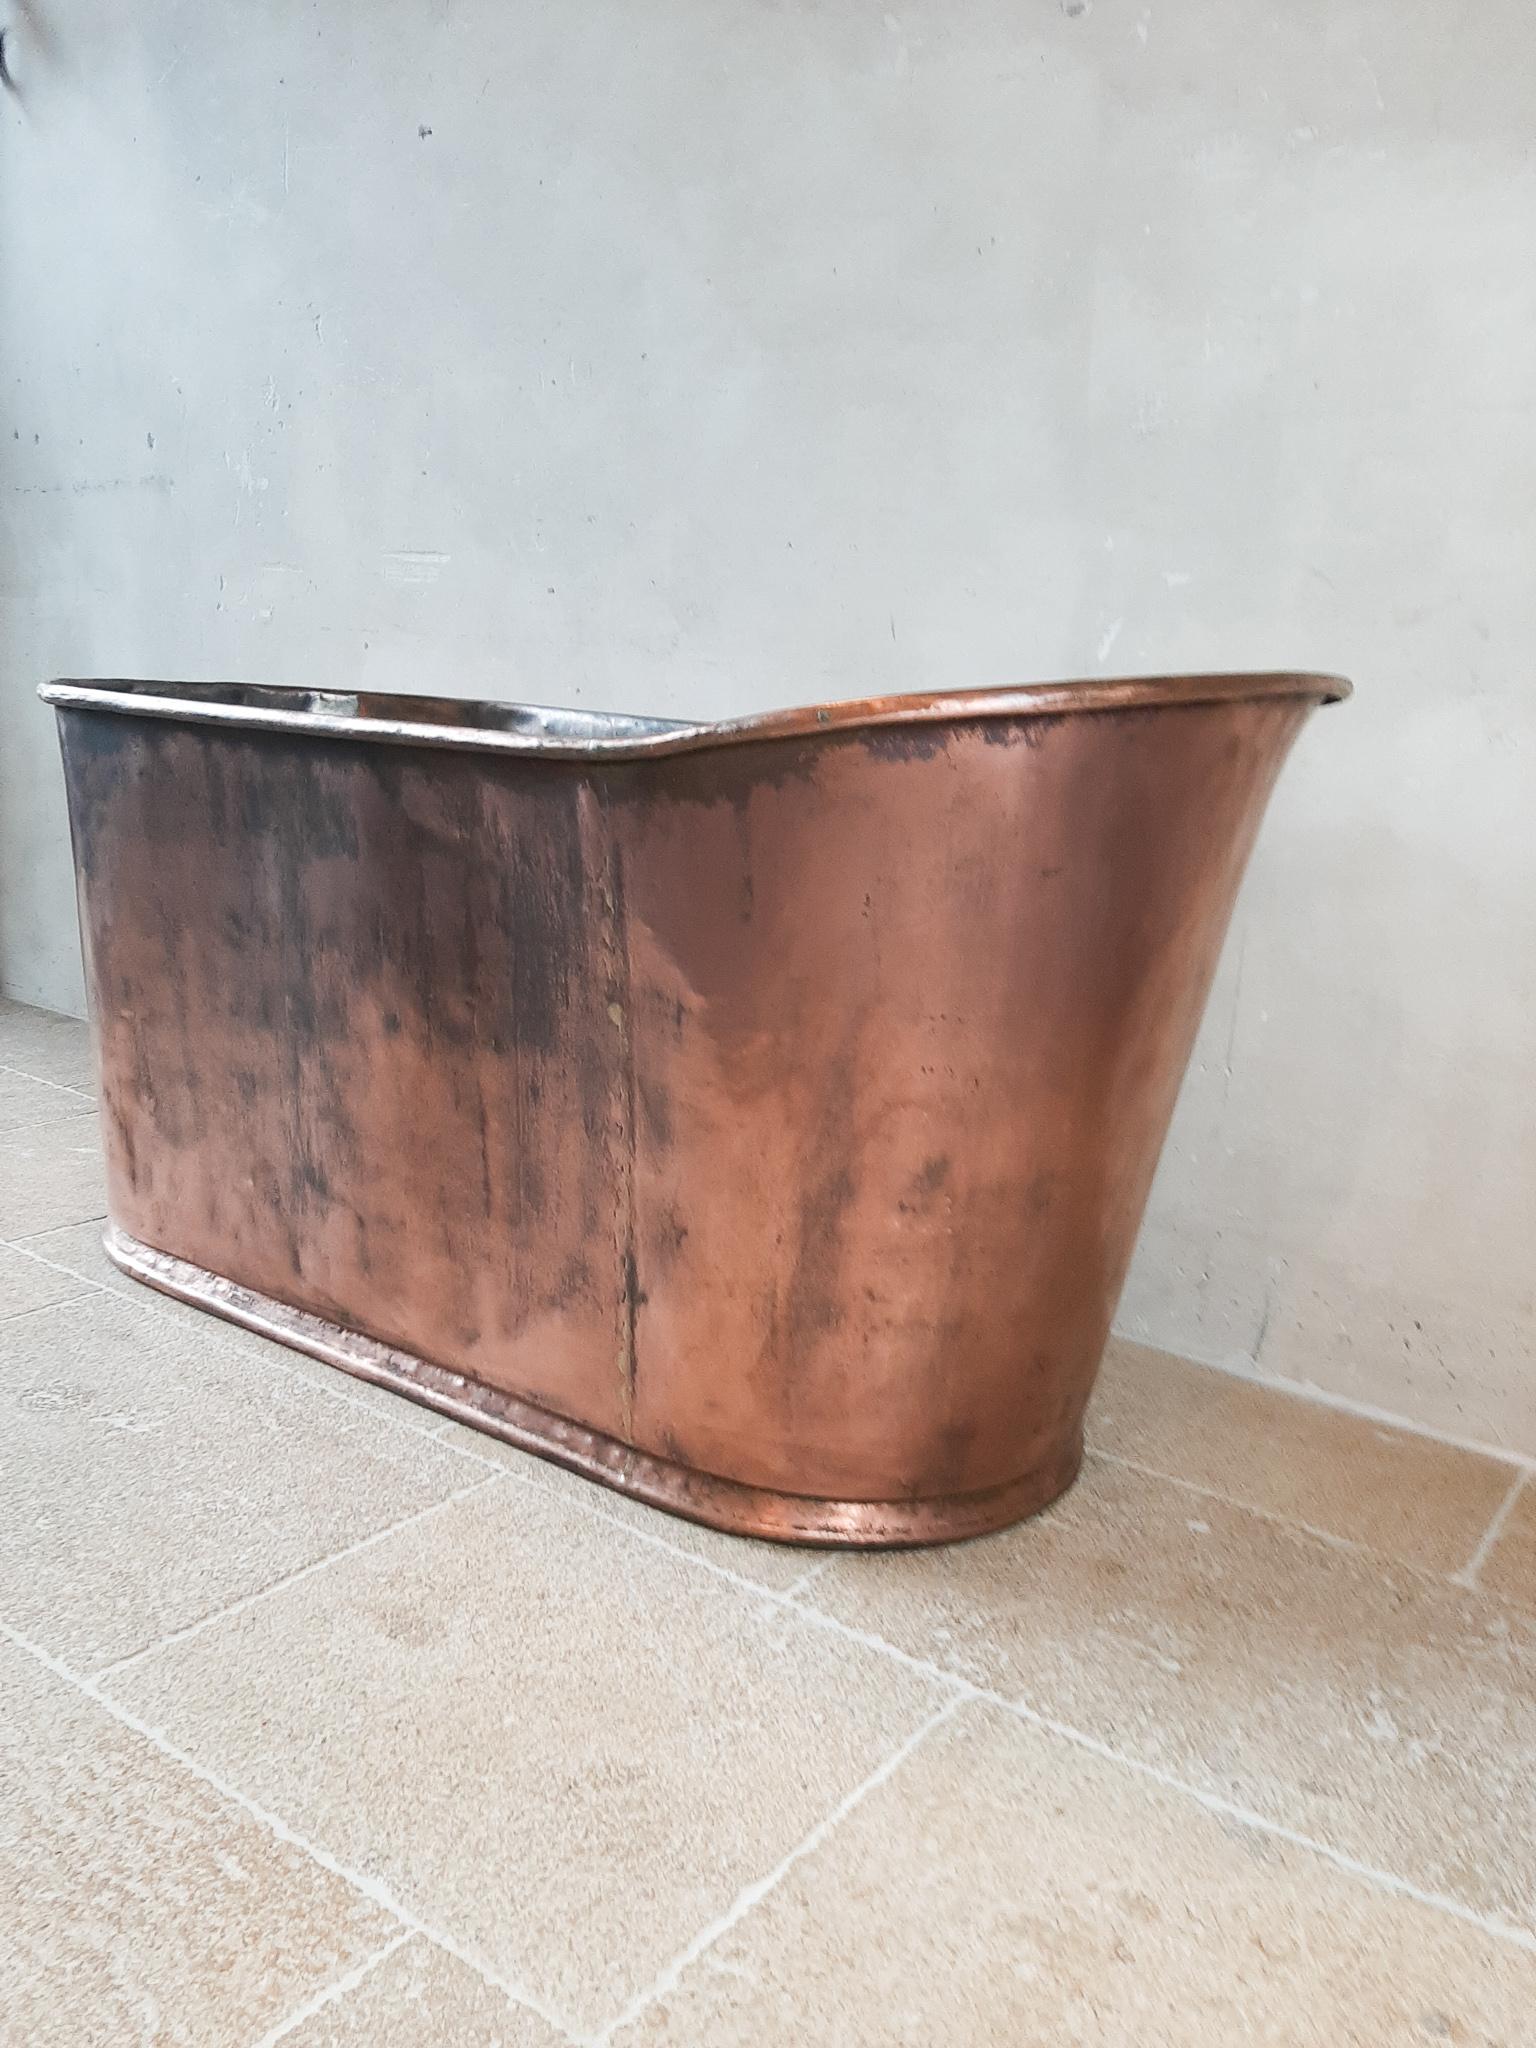 19th century bathtub